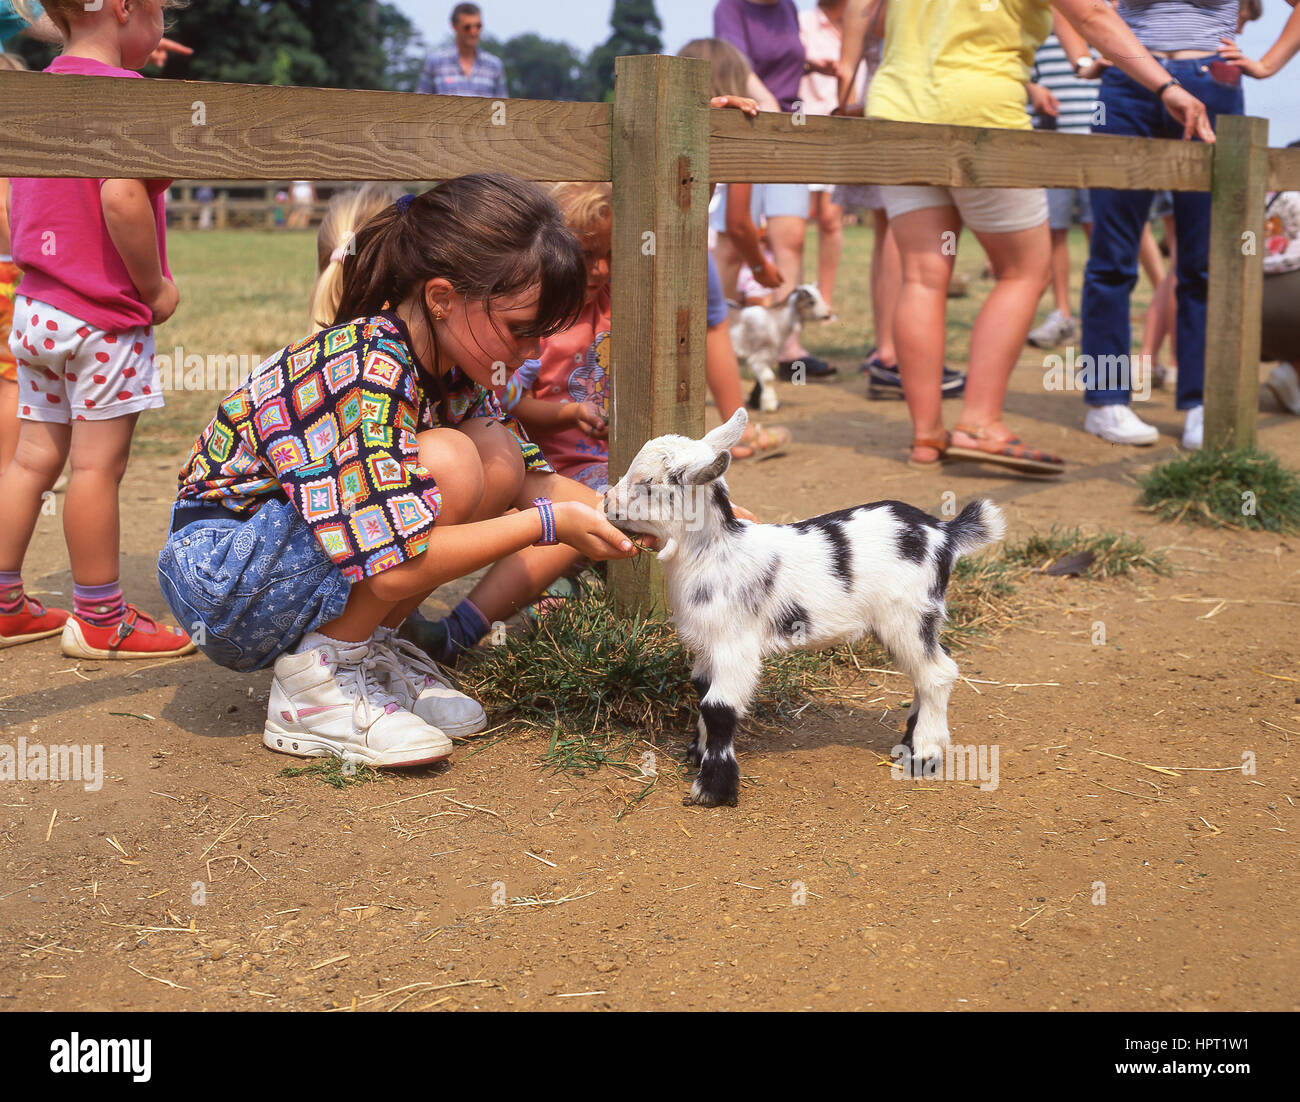 Jeune fille nourrir bébé chèvre dans la basse-cour pour les enfants, la faune Cotswold Parc & Jardins, Burford, Wiltshire, Angleterre, Royaume-Uni Banque D'Images